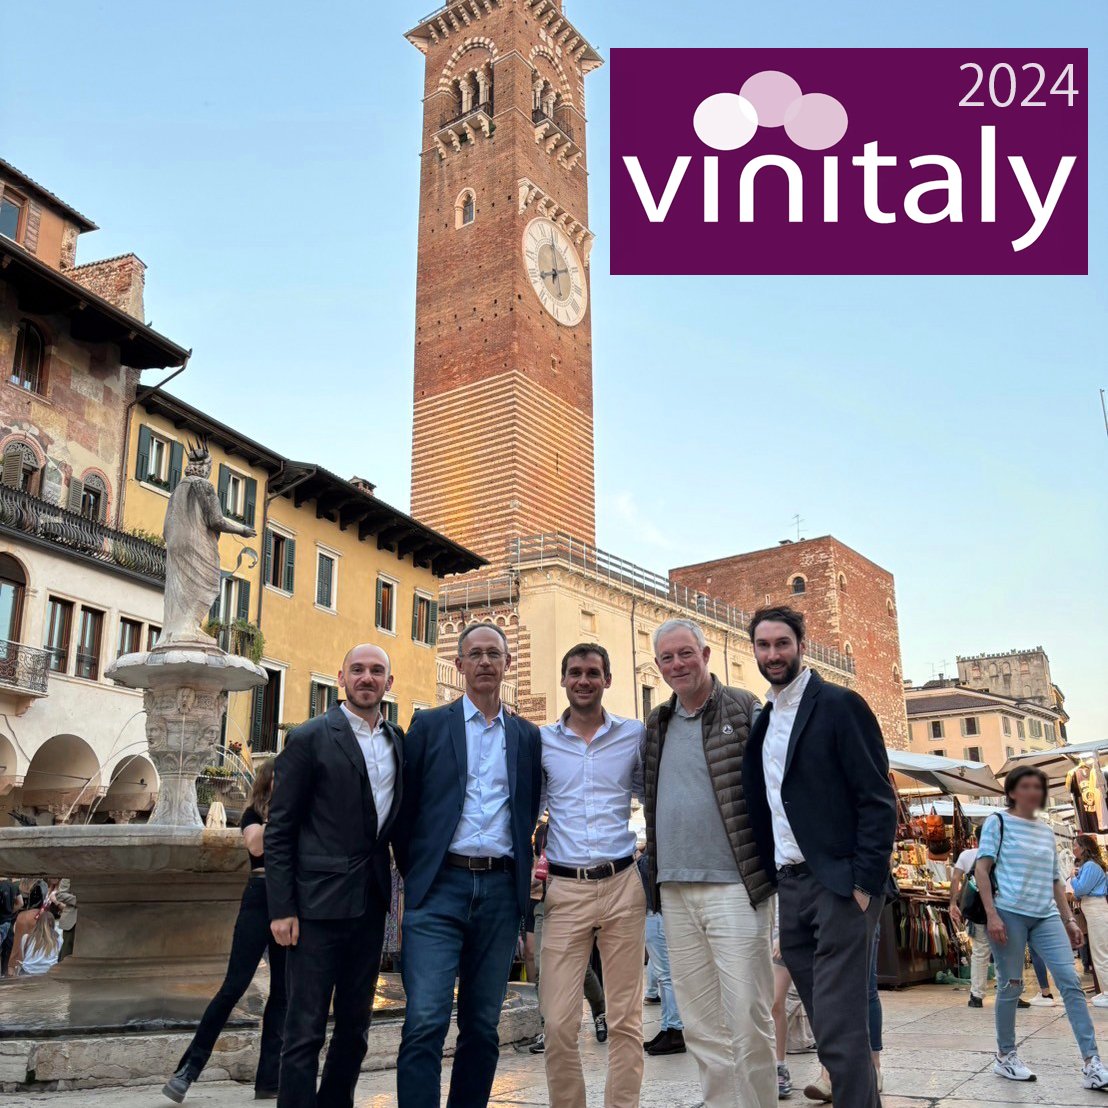 COOのイヴと新メンバーのアレッサンドロがイタリアに渡り、Vinitalyで新規生産者の発掘をしたり、既に取り扱いが決まっている生産者のもとを訪問してきました。

今後銘醸地を皮切りにイタリアワインのラインナップがどんどん増えますので、是非ご期待ください！

#イタリアワイン